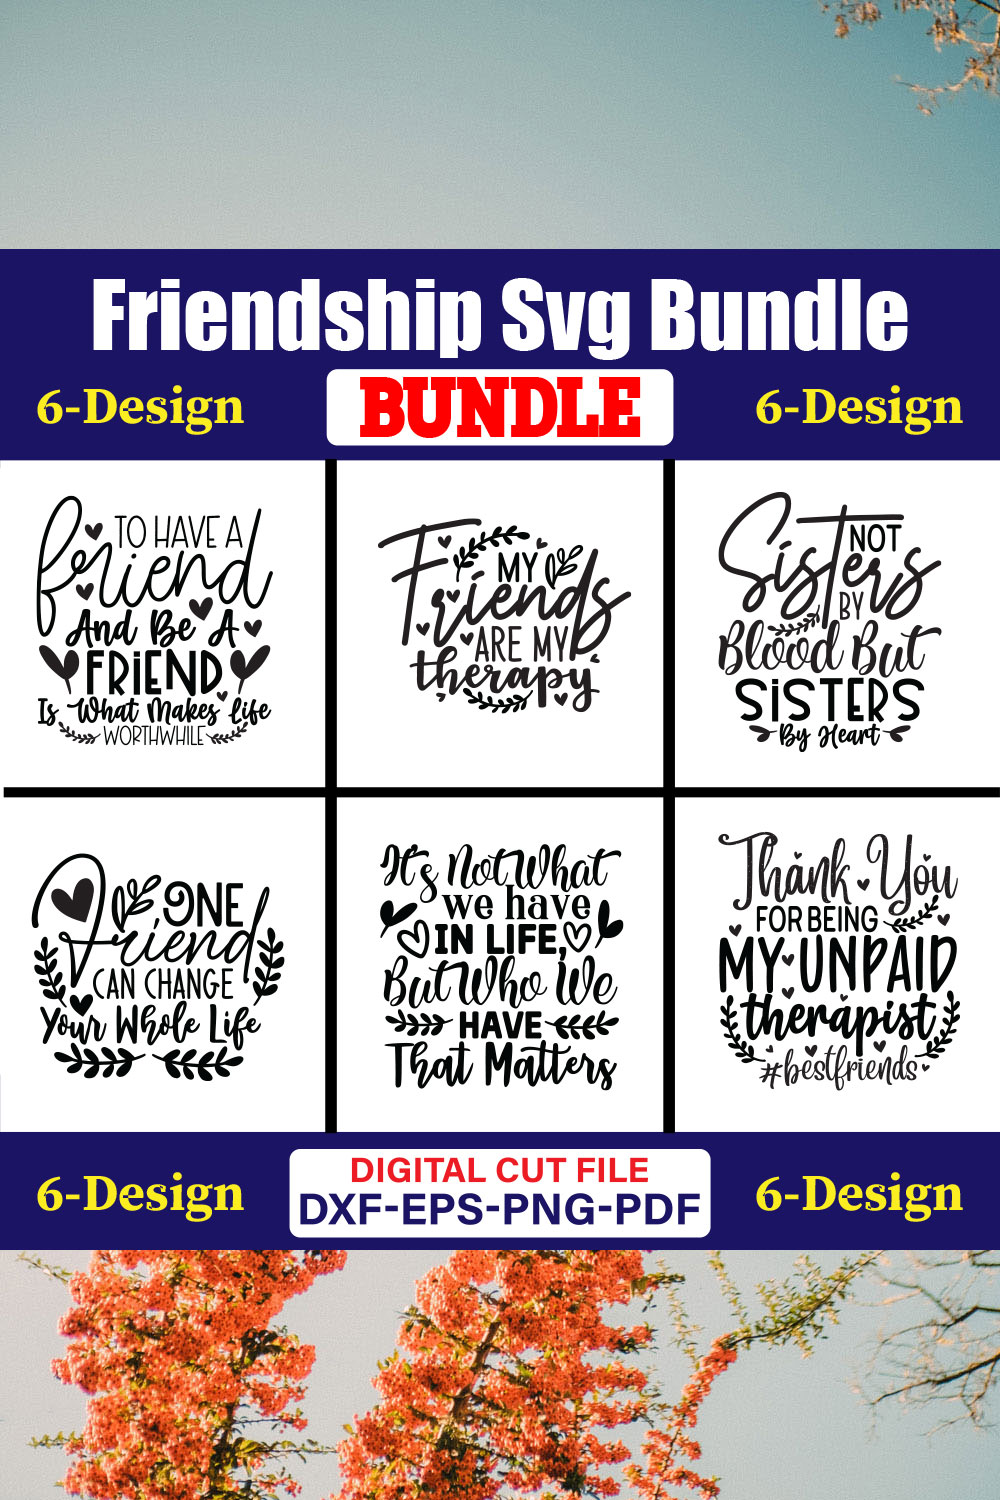 Friendship SVG T-shirt Design Bundle Vol-02 pinterest preview image.